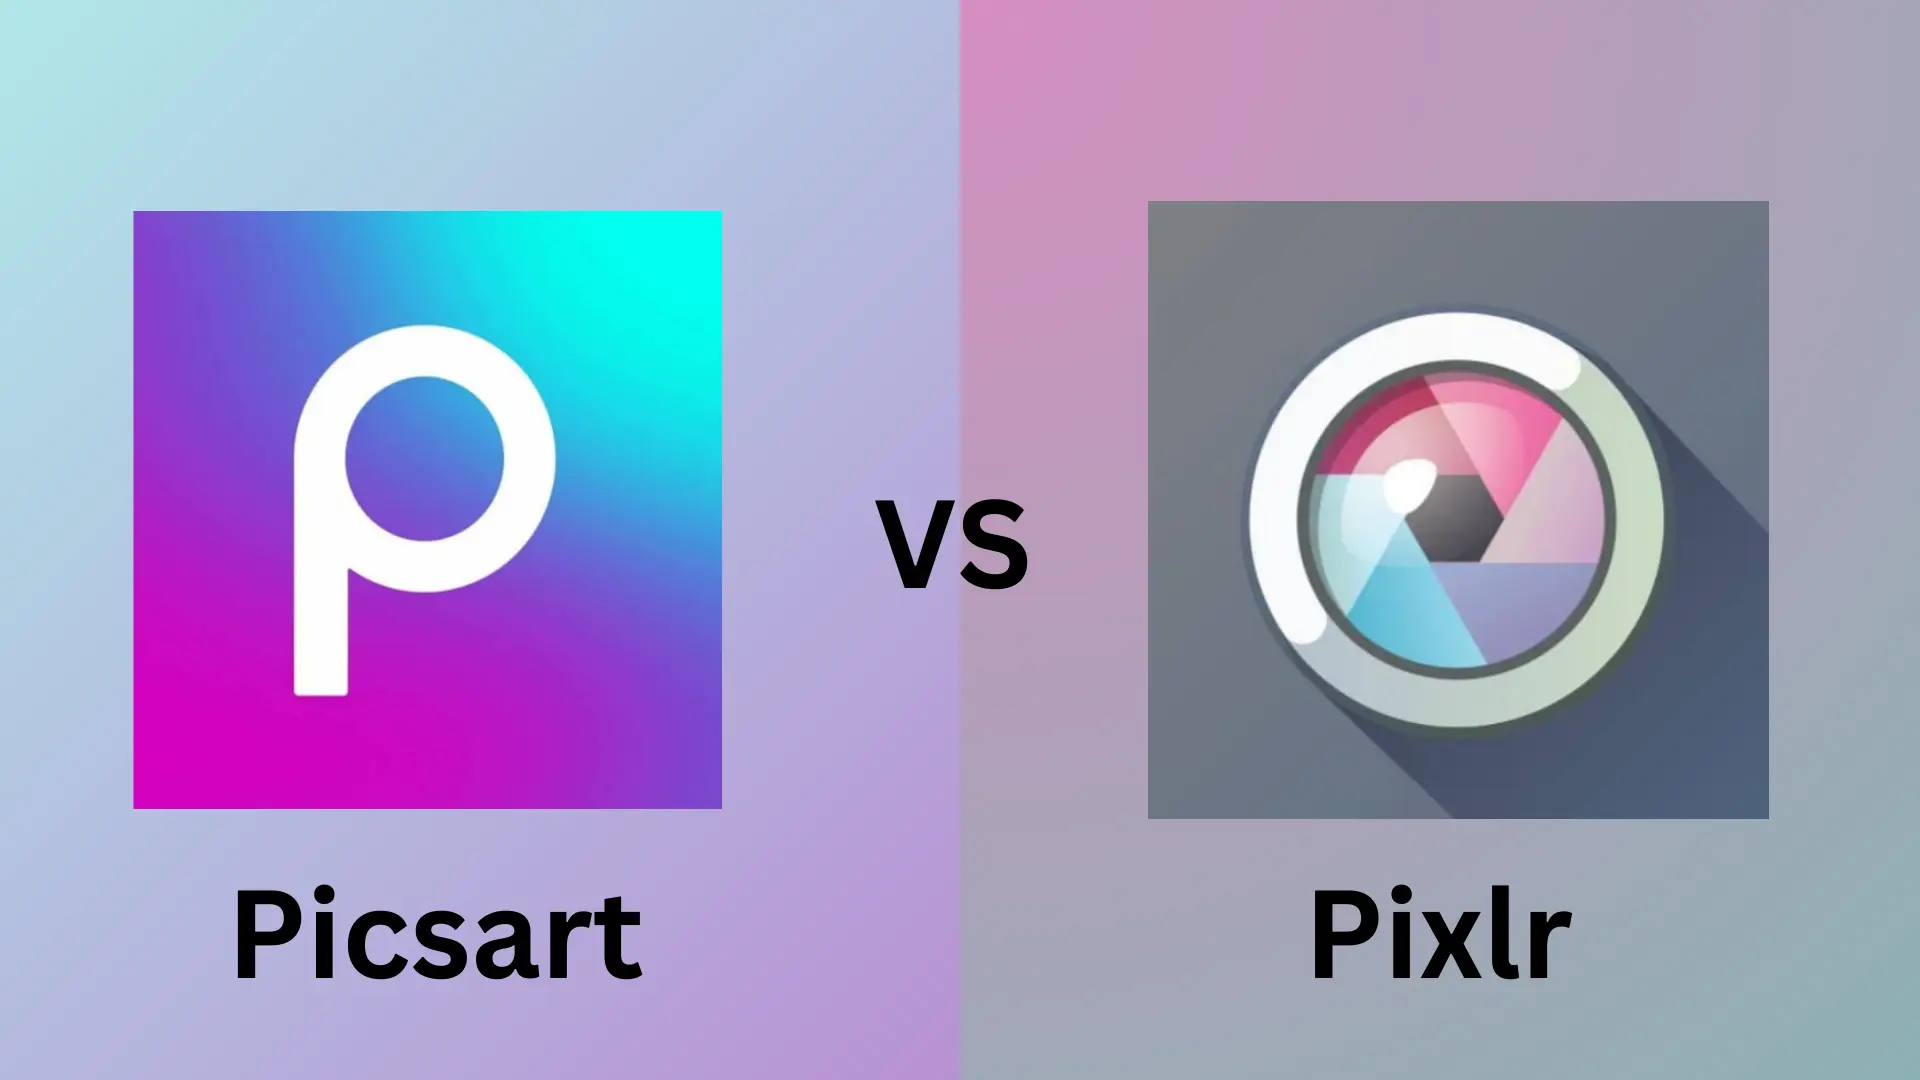 picsart vs pixlr, feature image